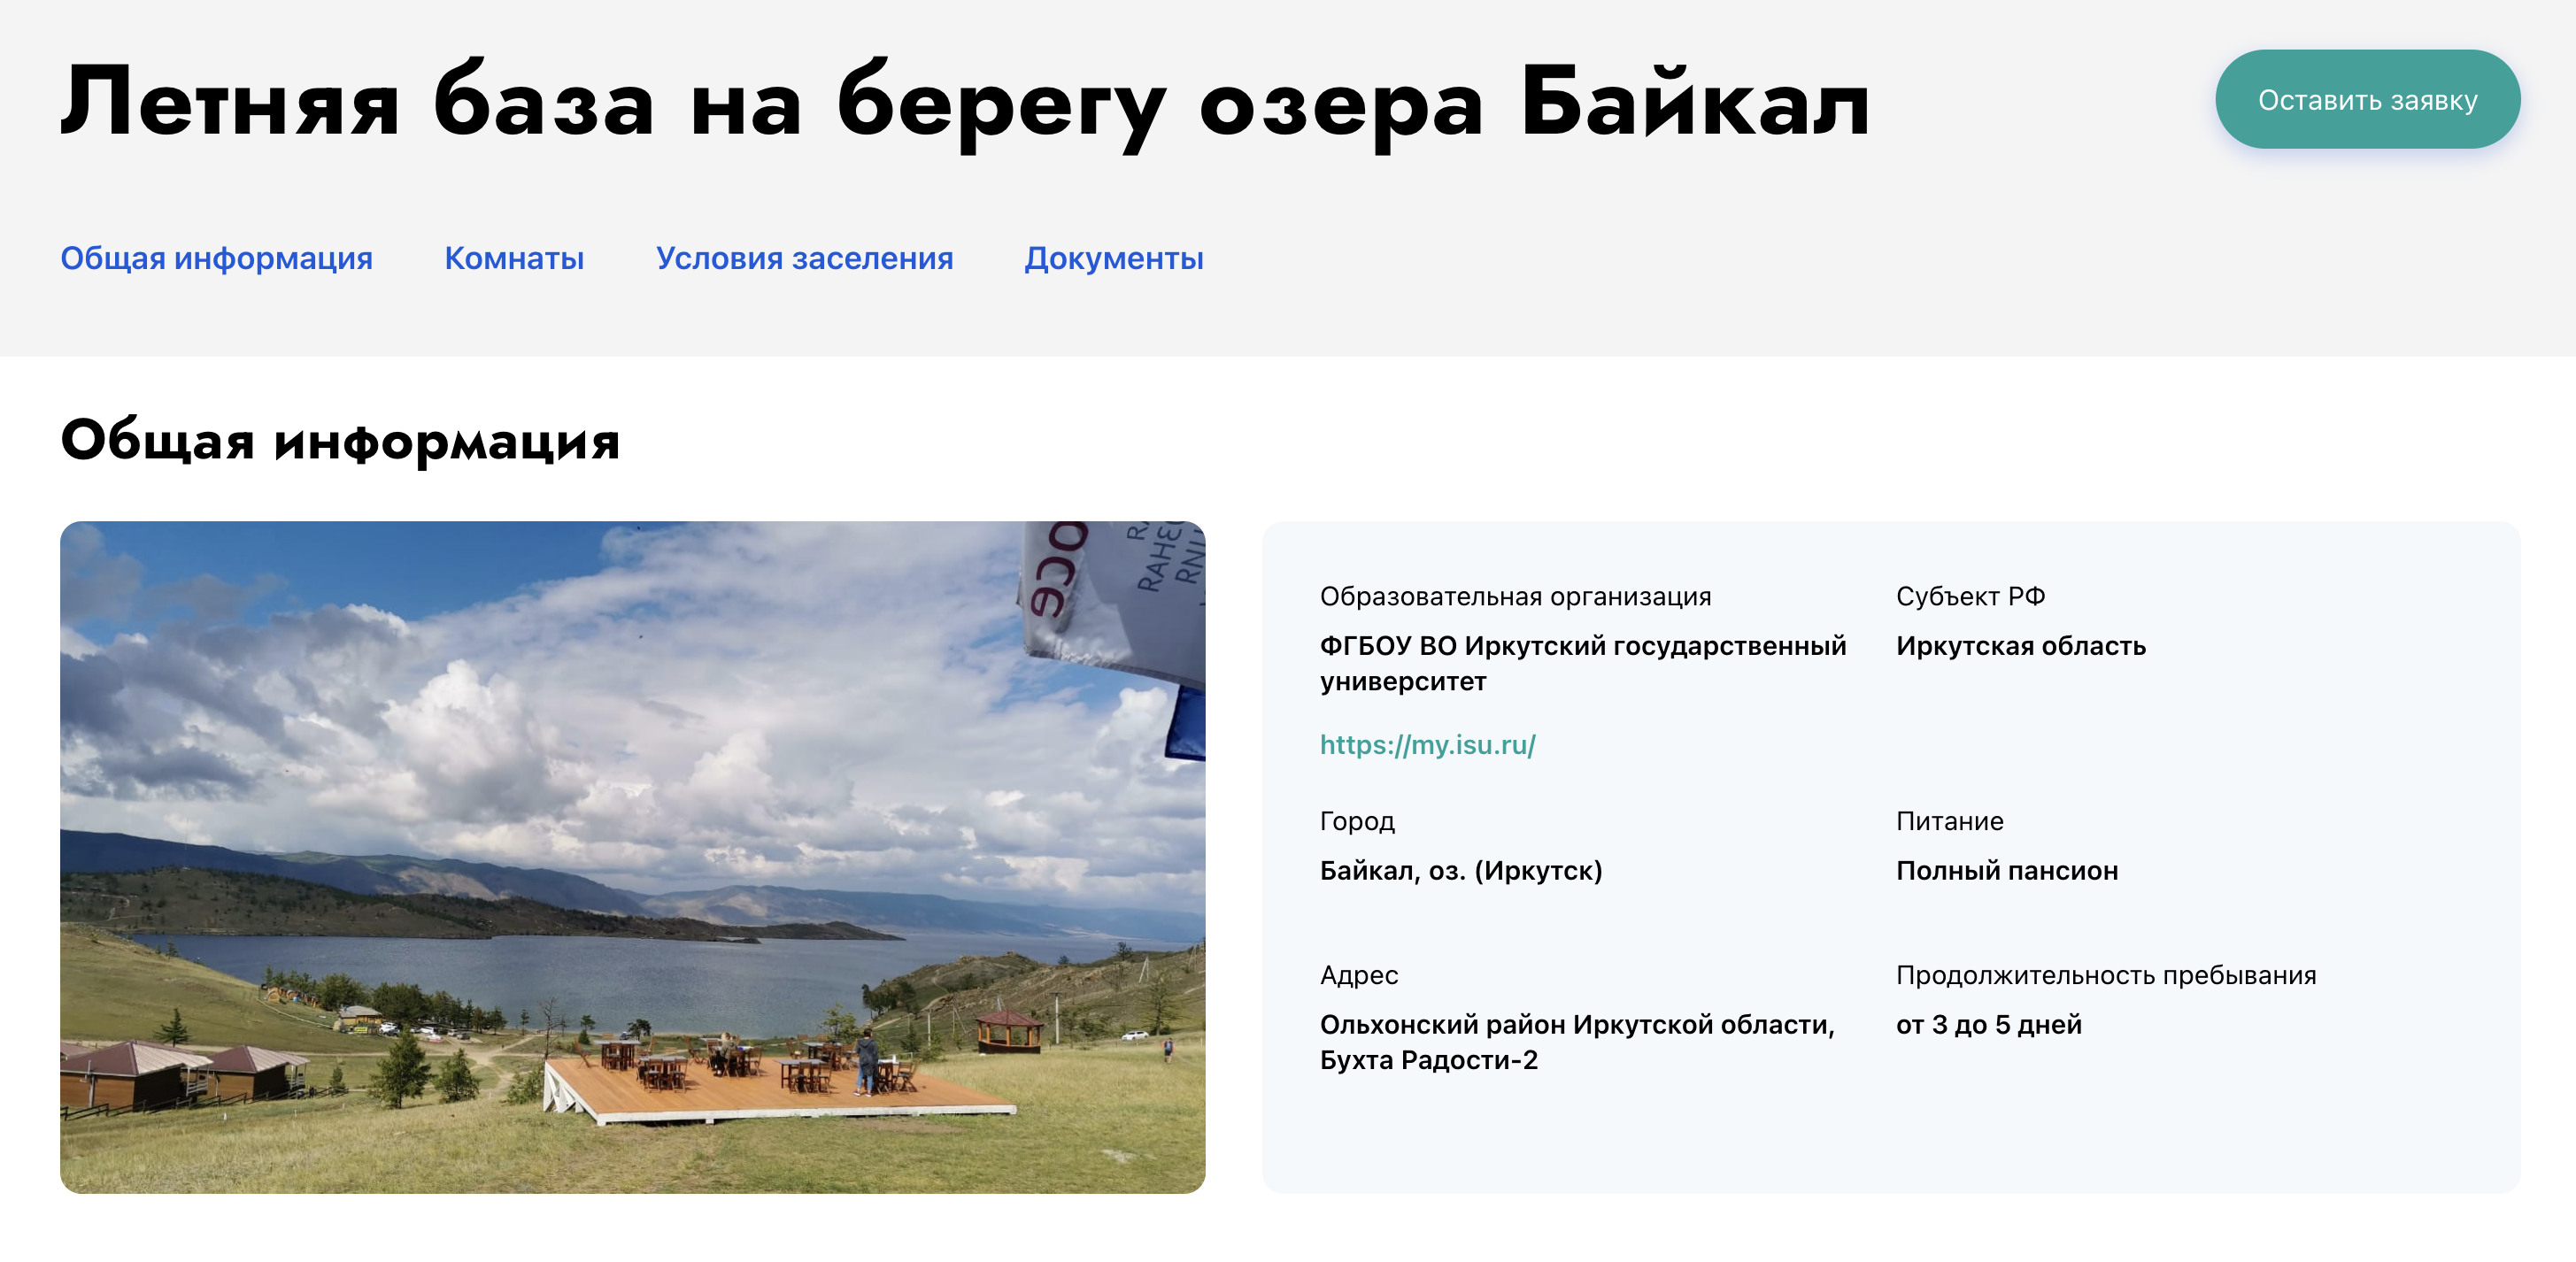 А за проживание на Байкале с трехразовым питанием придется заплатить 1600 ₽ в сутки. Источник: студтуризм.рф